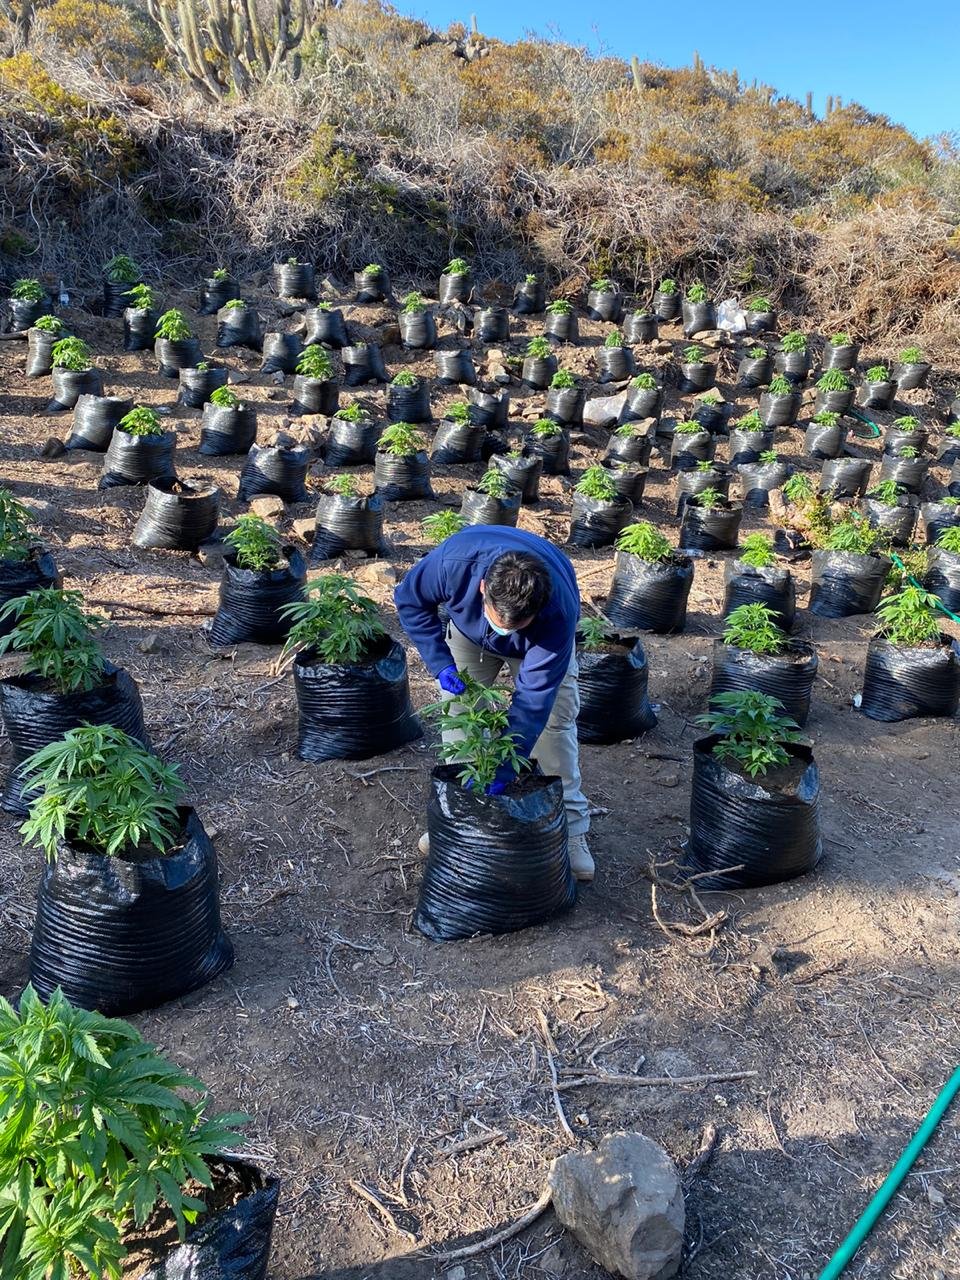 PDI realiza hallazgo de plantación de cannabis en Ovalle